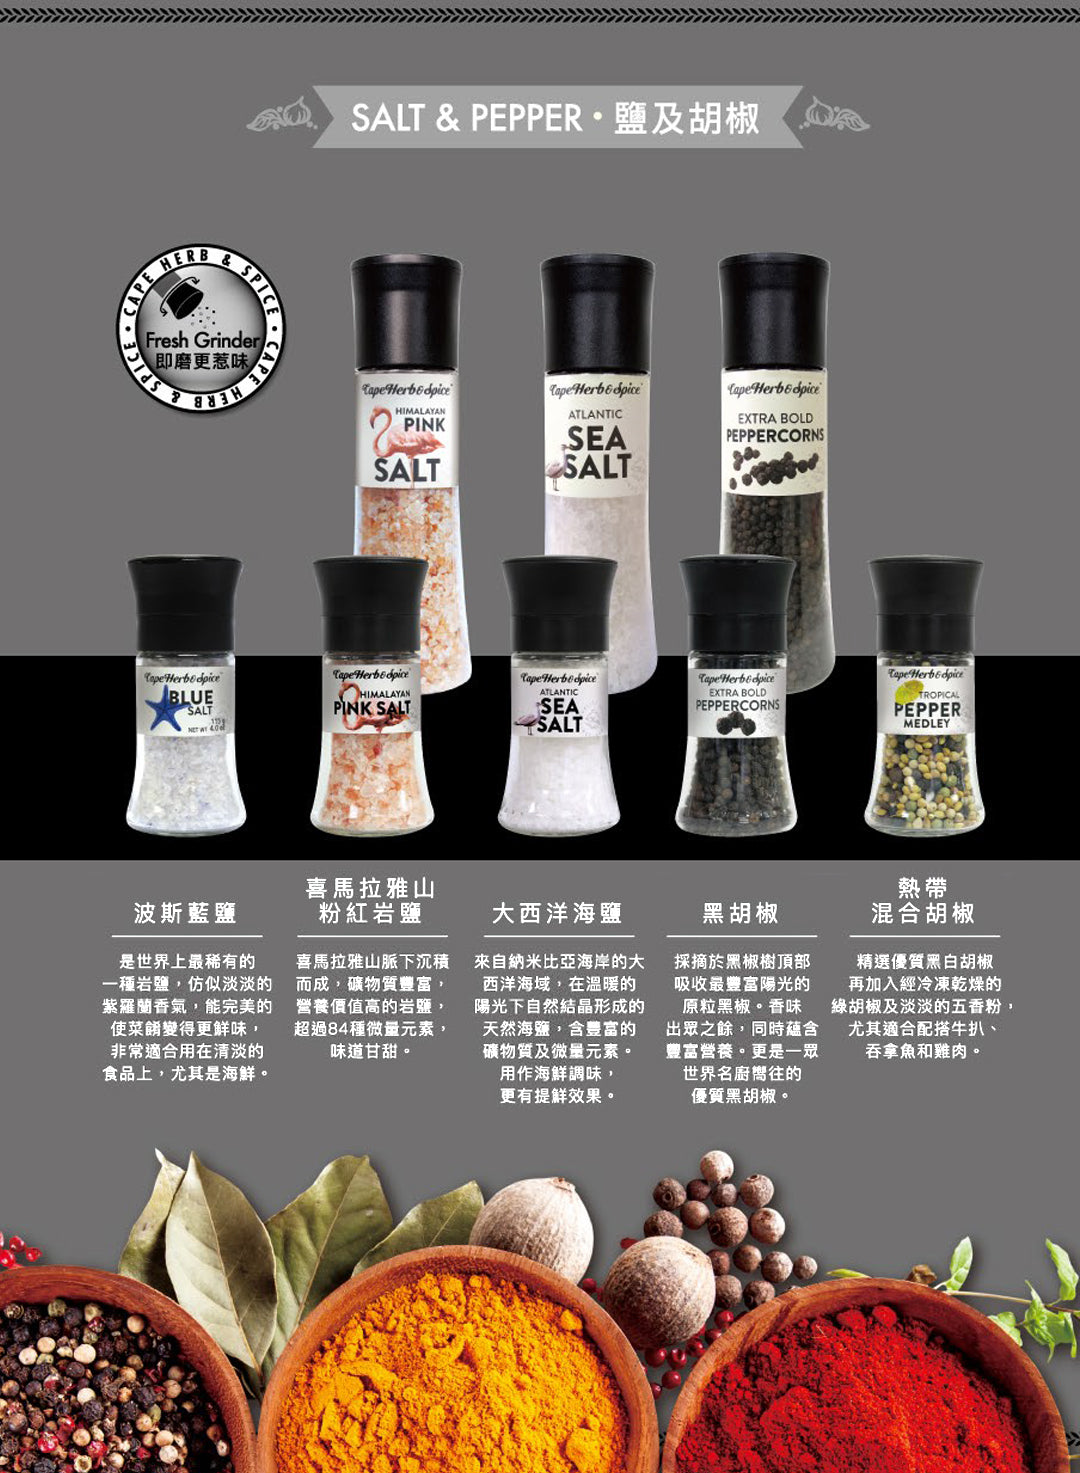 Cape Herb Salt & Pepper Shaker 南非香普調味椒鹽 390g